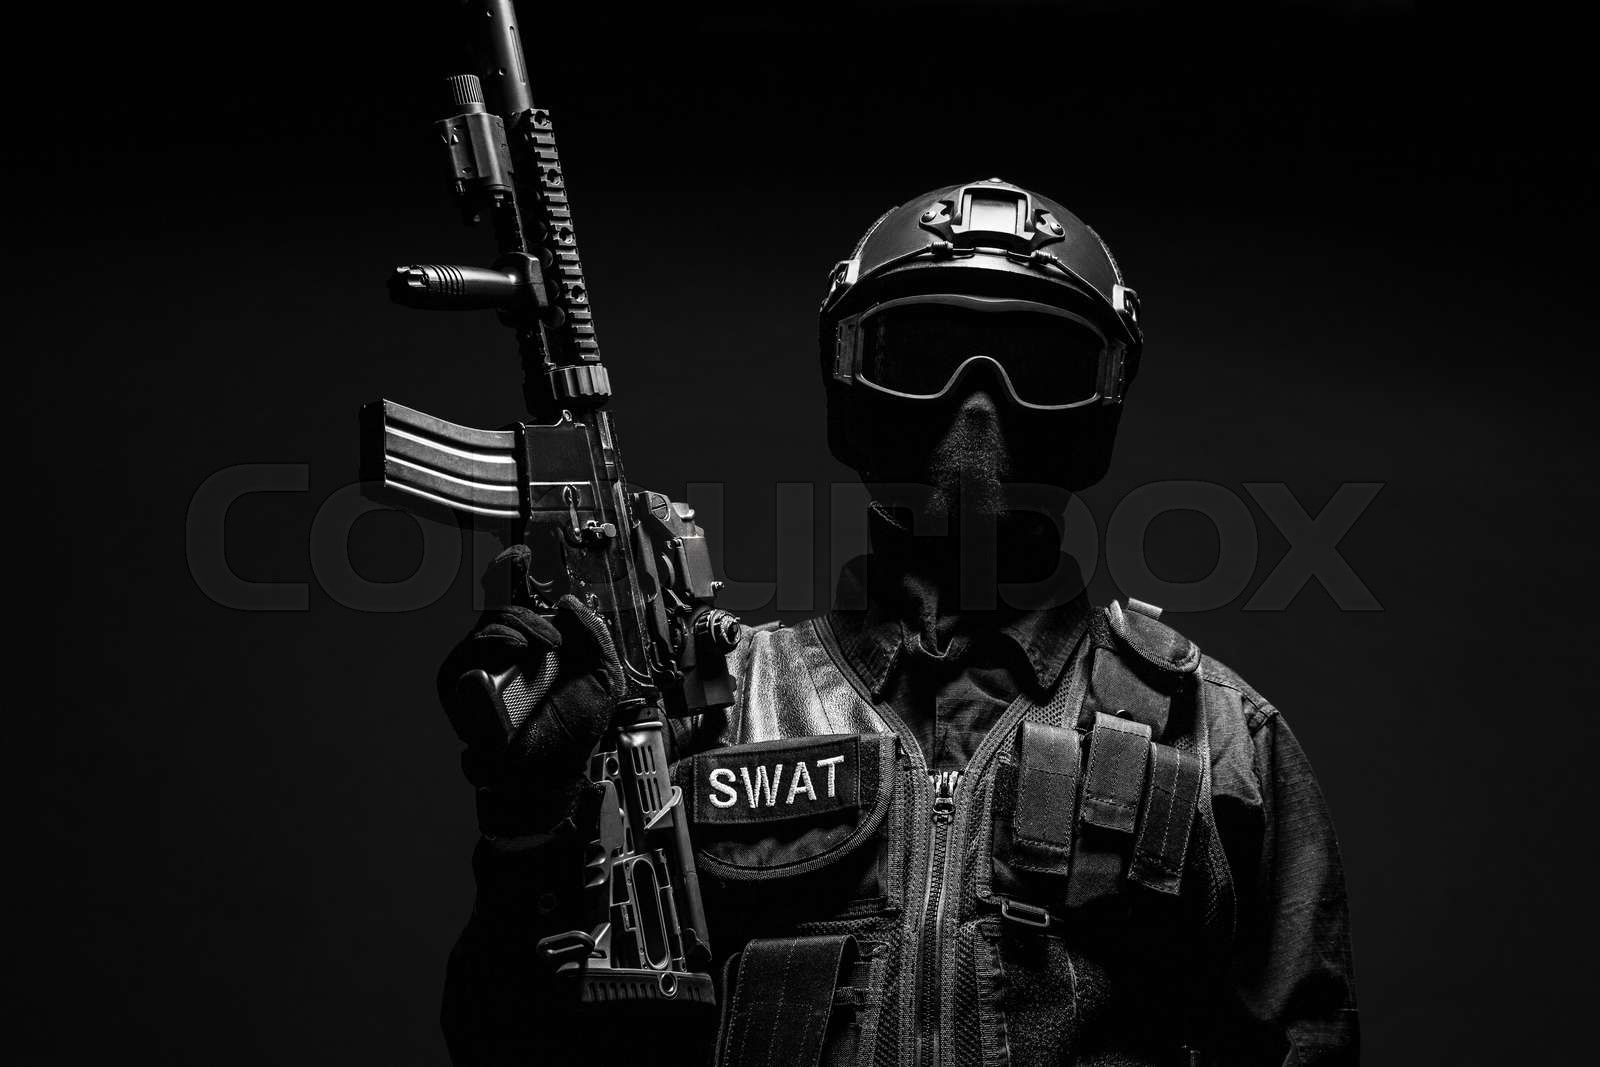 Spec ops police officer SWAT